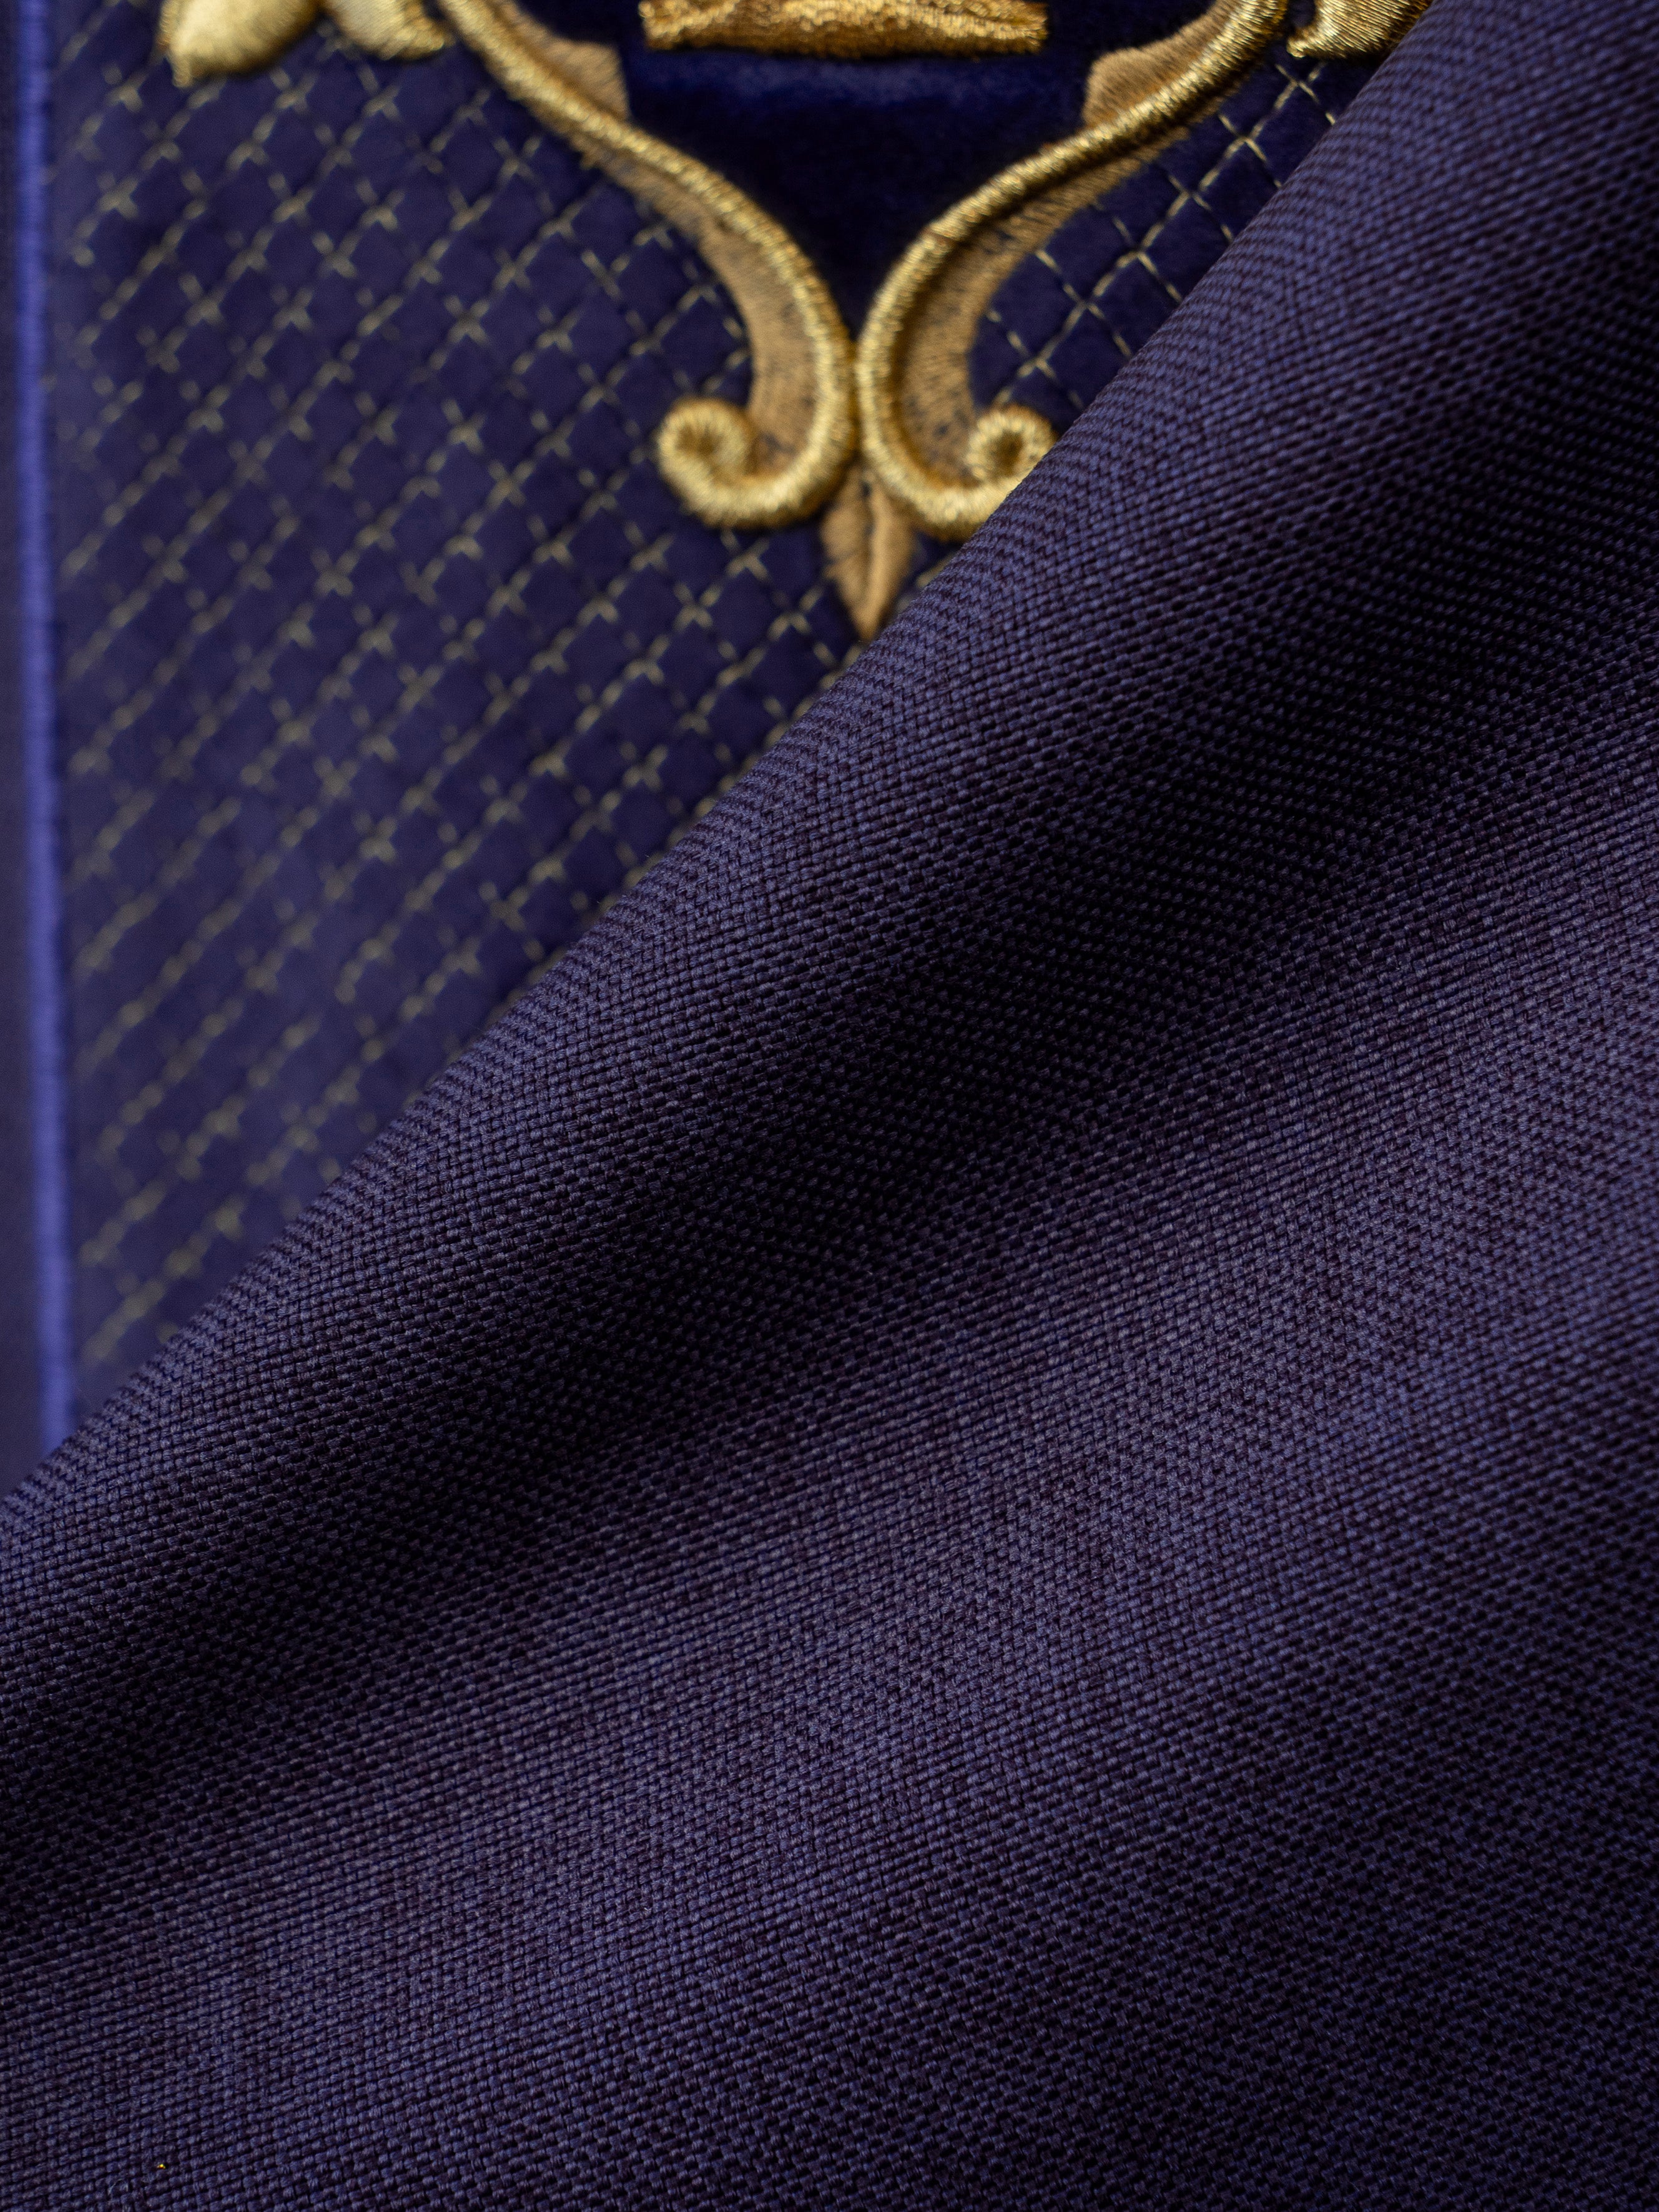 Ornat z aksamitnym fioletowym pasem i haftem krzyży